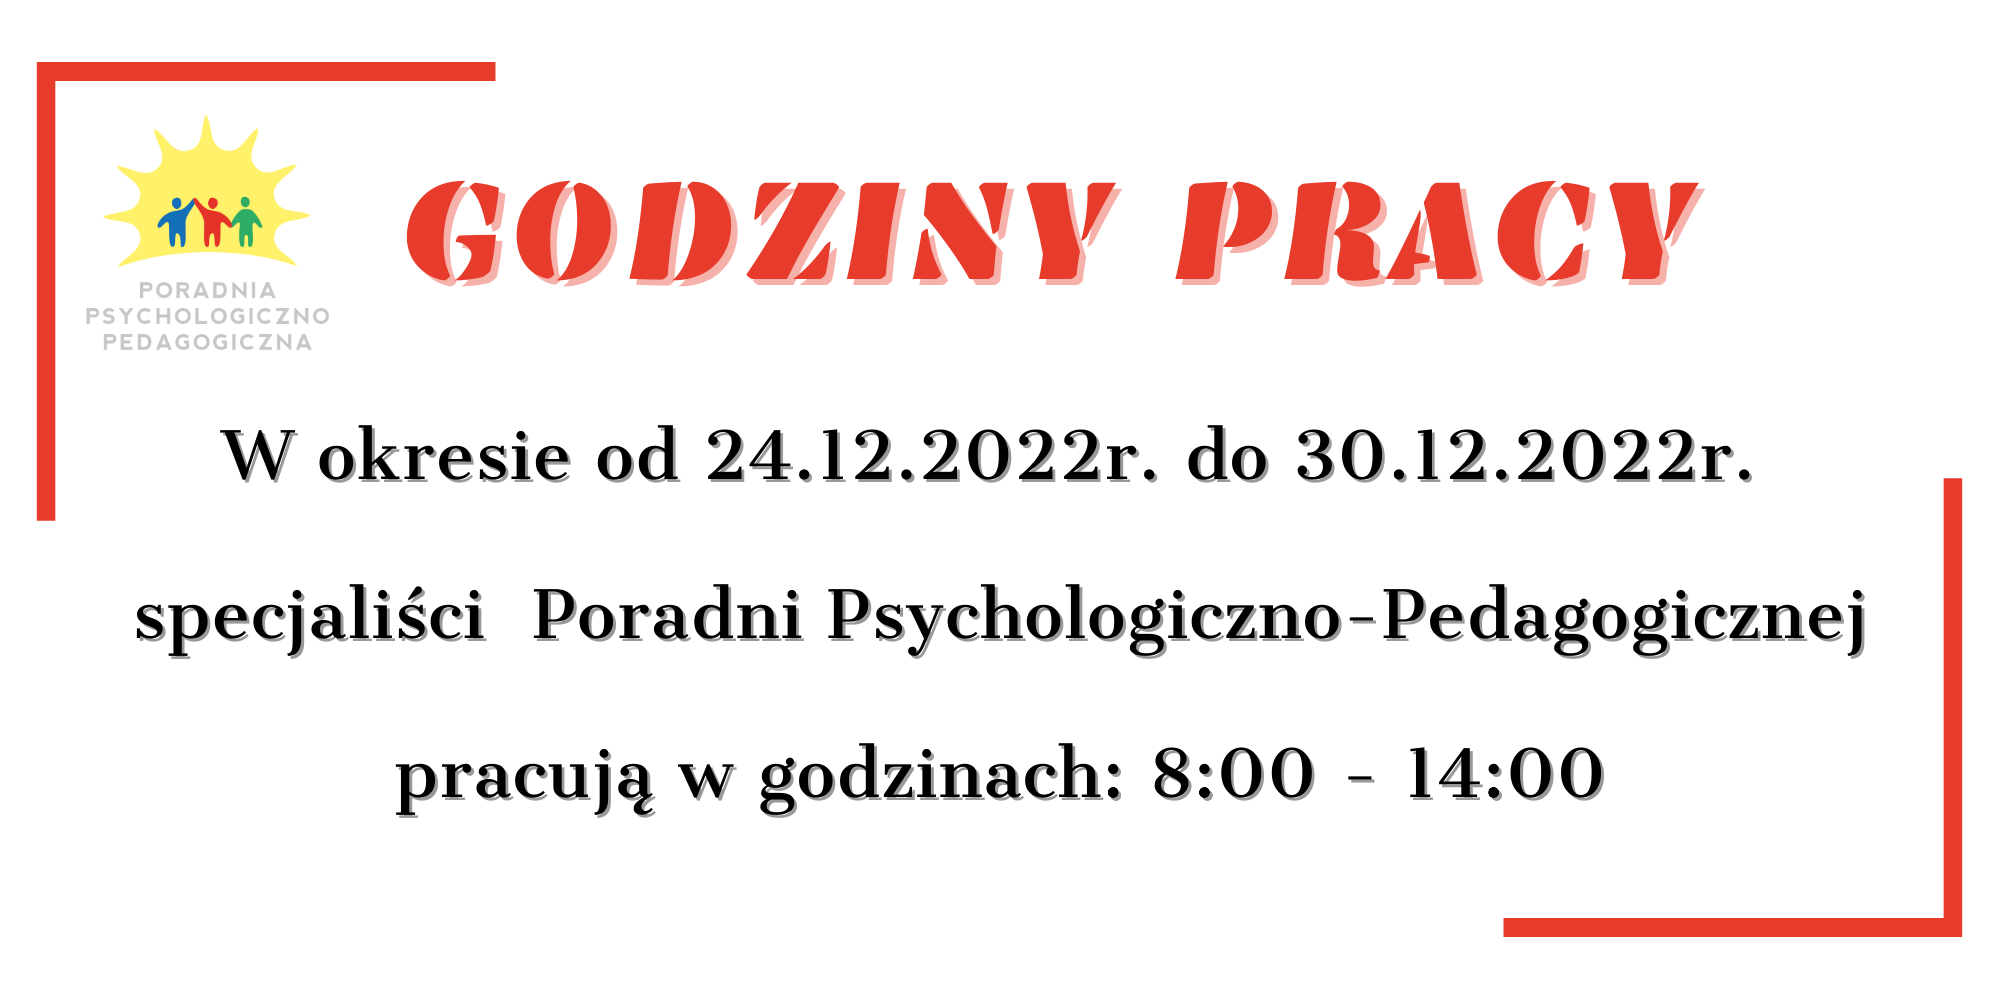 W okresie od 24.12.2022r. do 30.12.2022r. specjaliści Poradni Psychologiczno-Pedagogicznej pracuje w godzinach 800 - 1400(1)